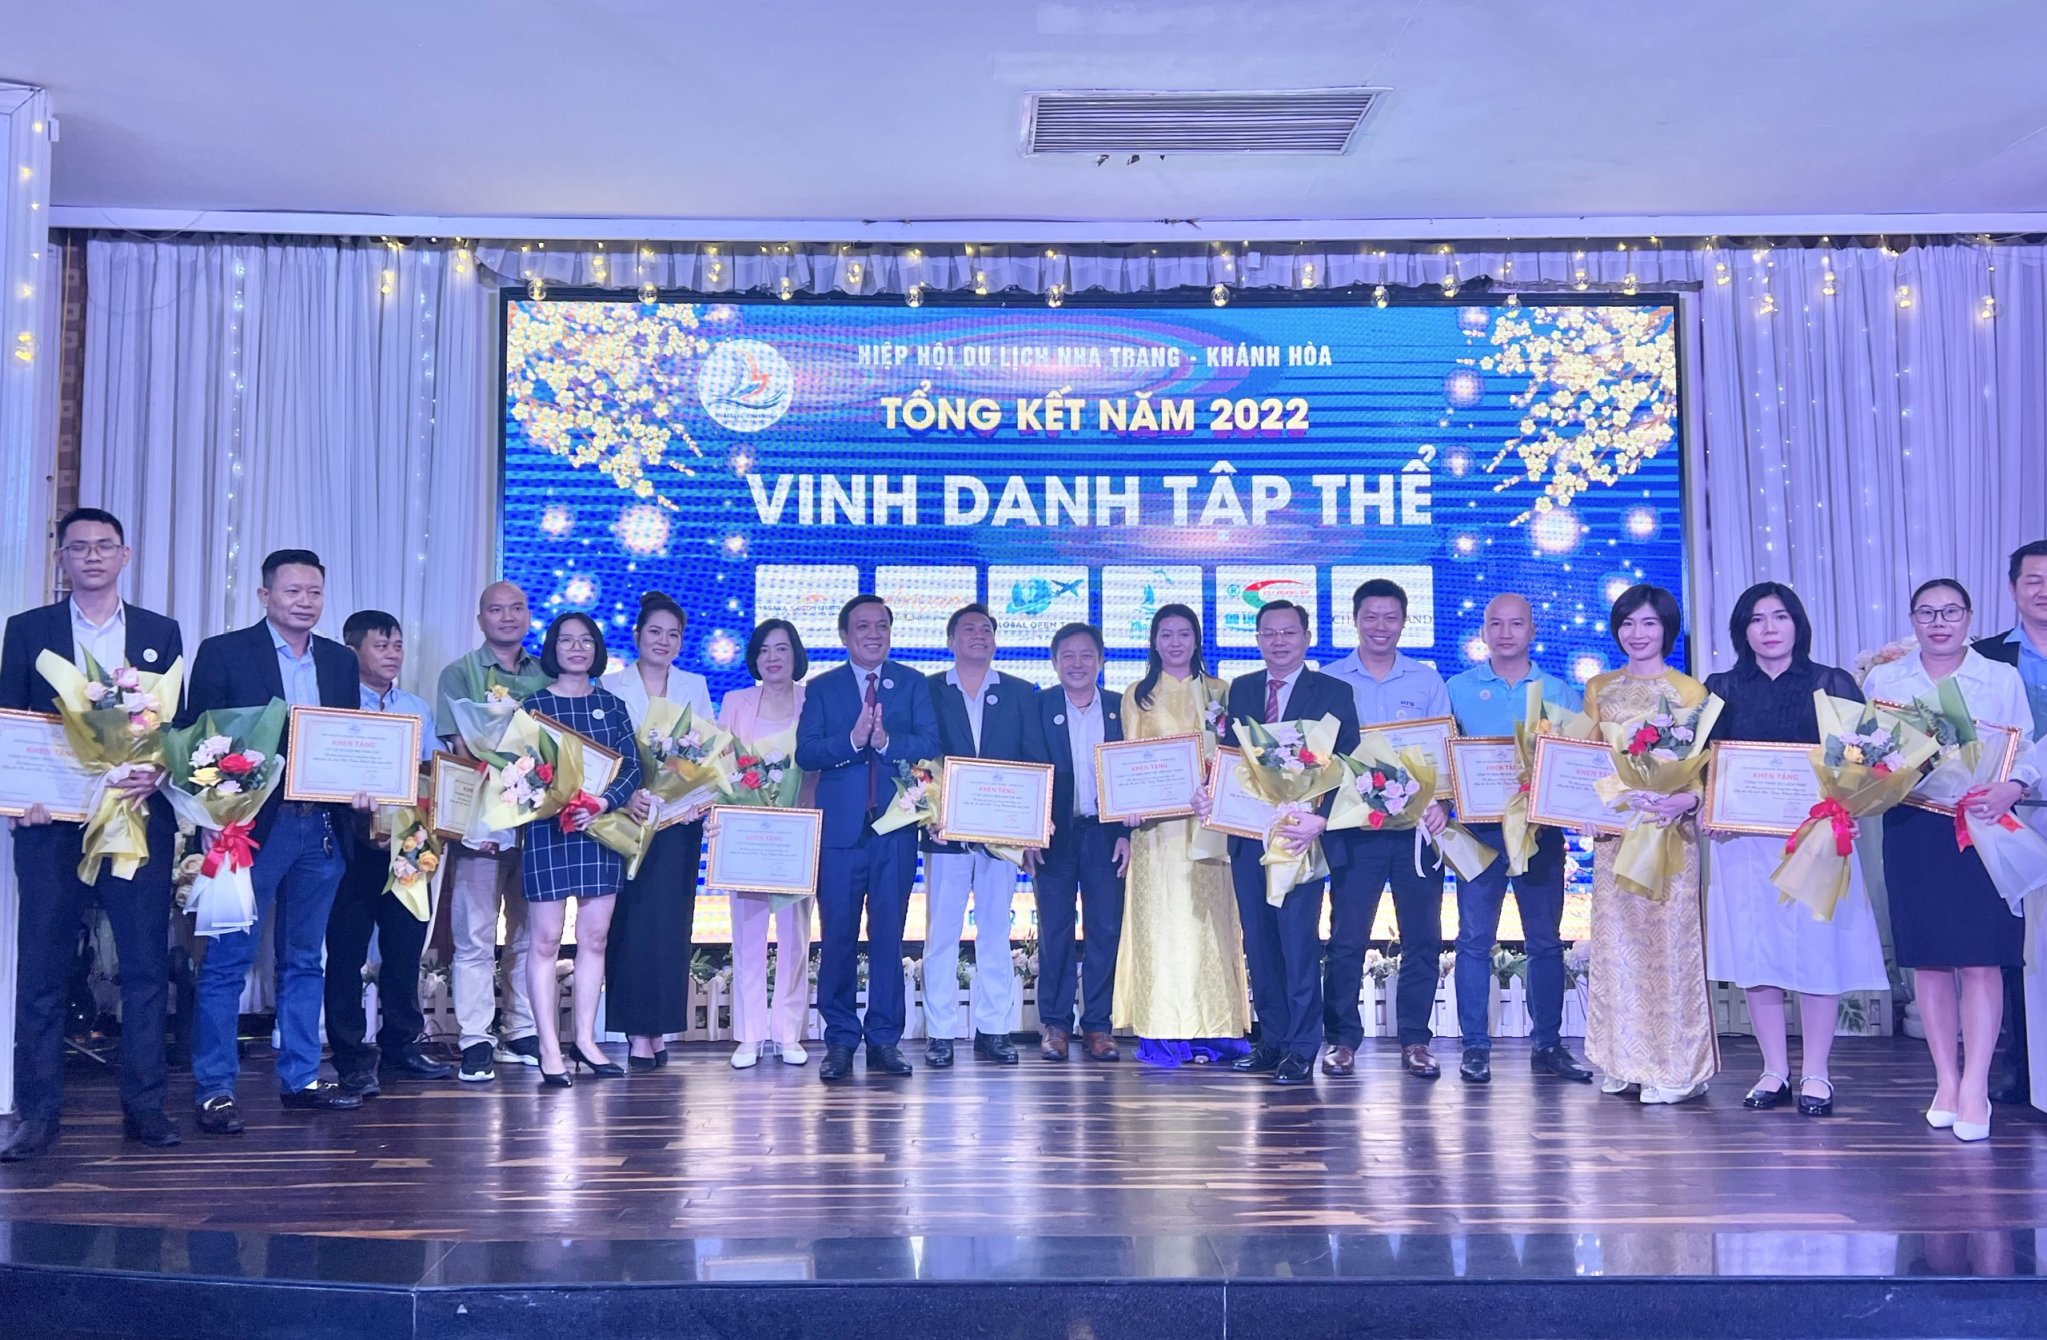 Lãnh đạo HHDL Nha Trang - Khánh Hòa khen thưởng cho các tập thể có thành tích xuất sắc trong năm 2022